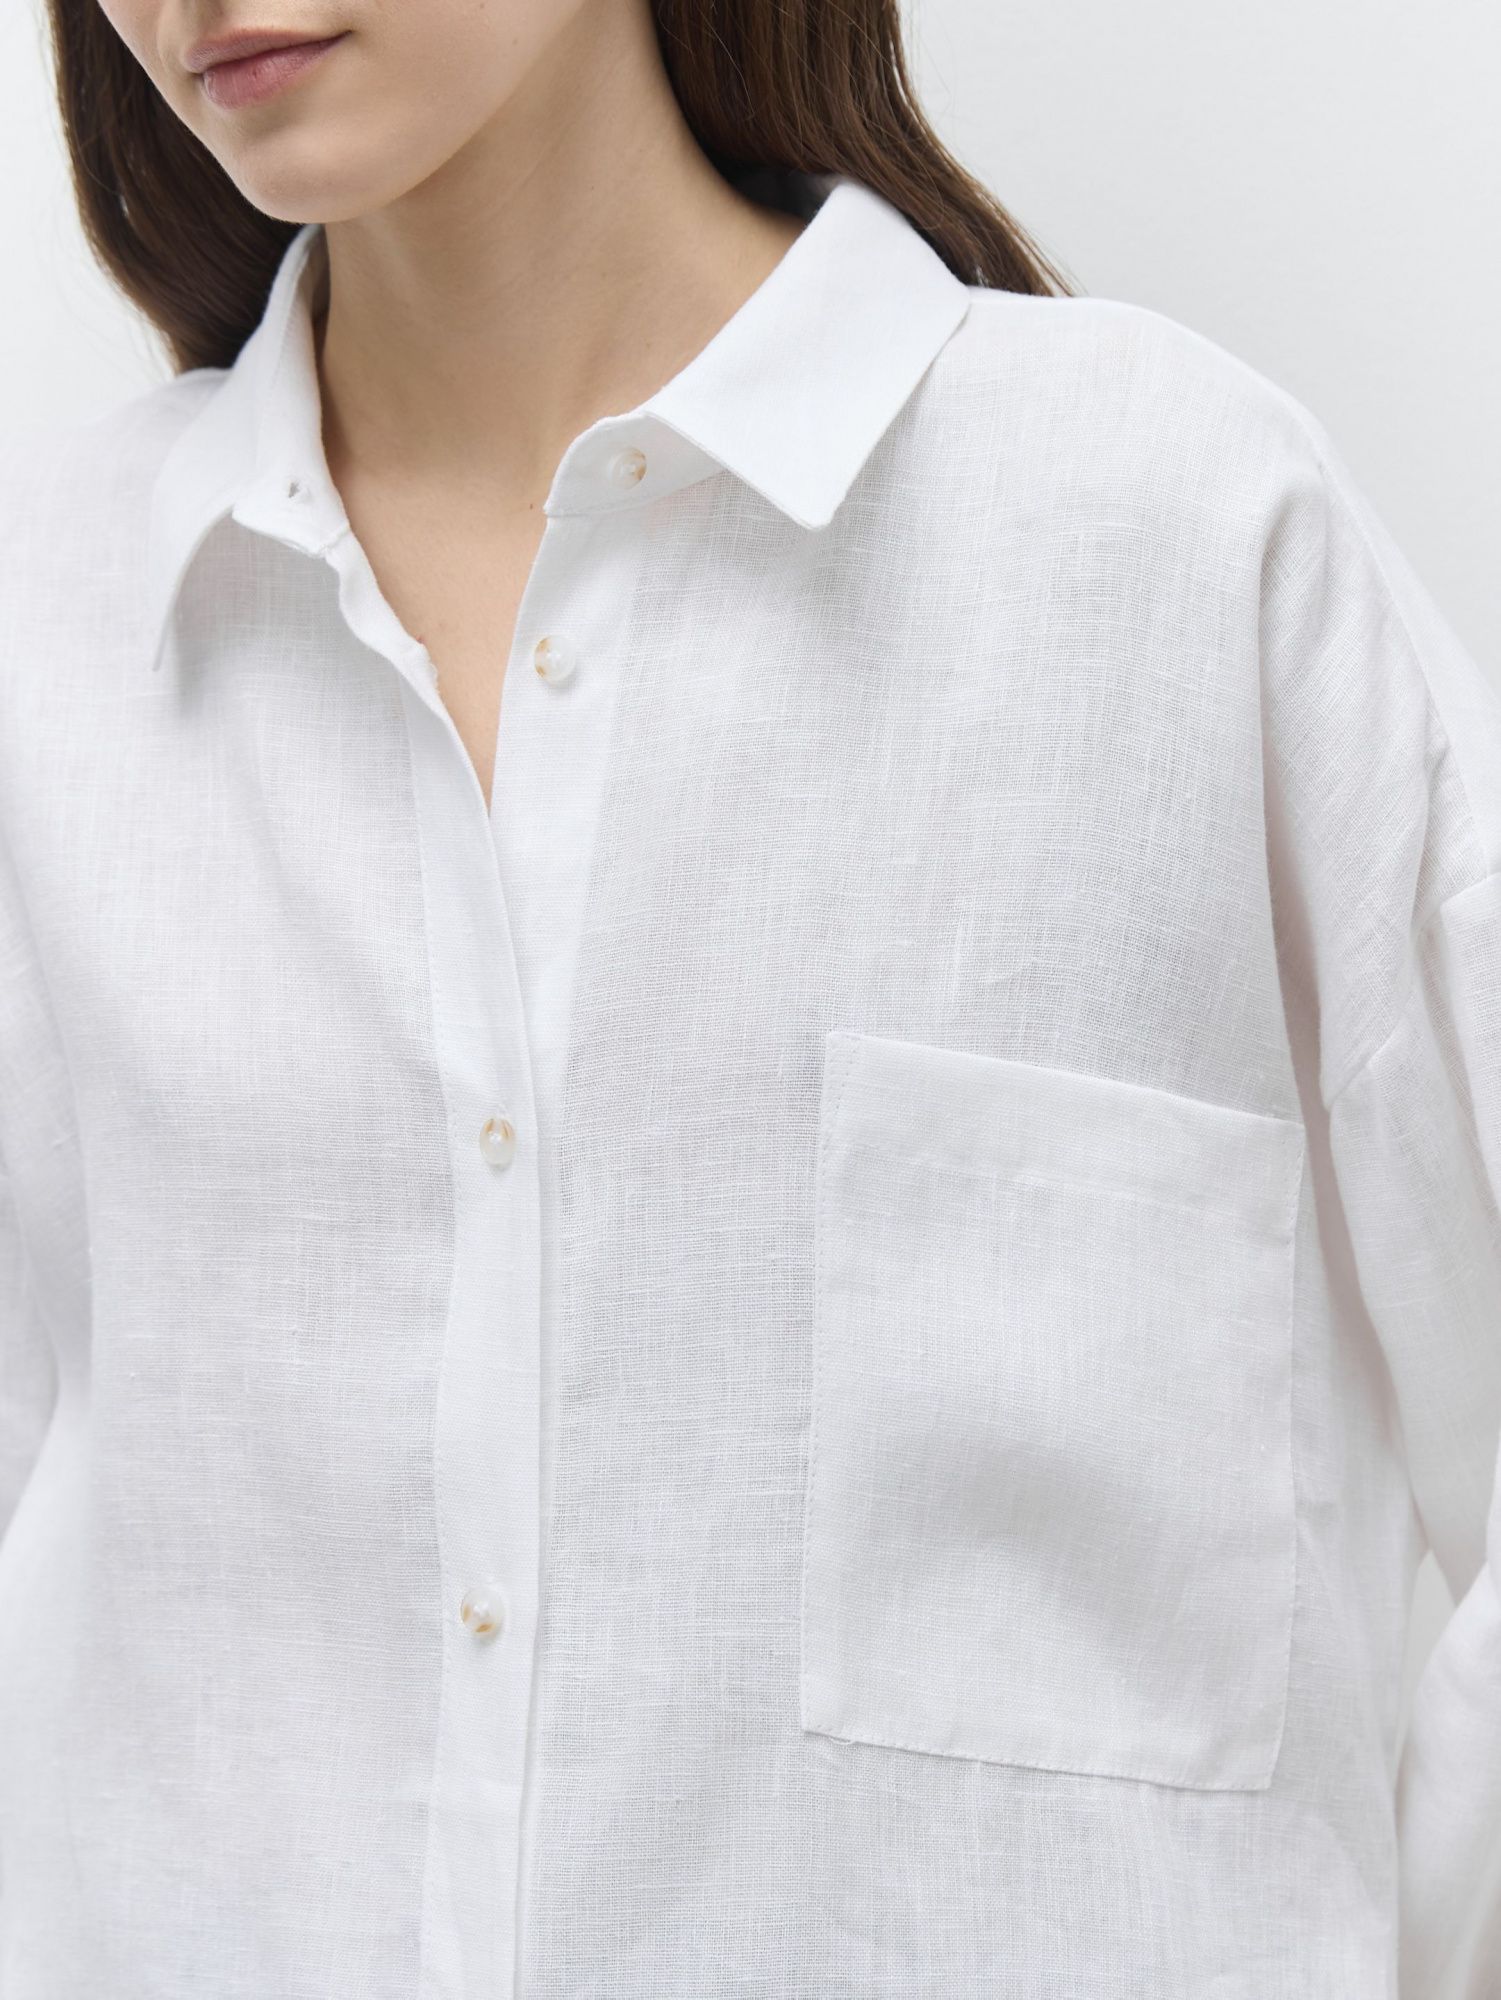 Рубашка объемная изо льна ver.2.0 белый - фото 2. Around